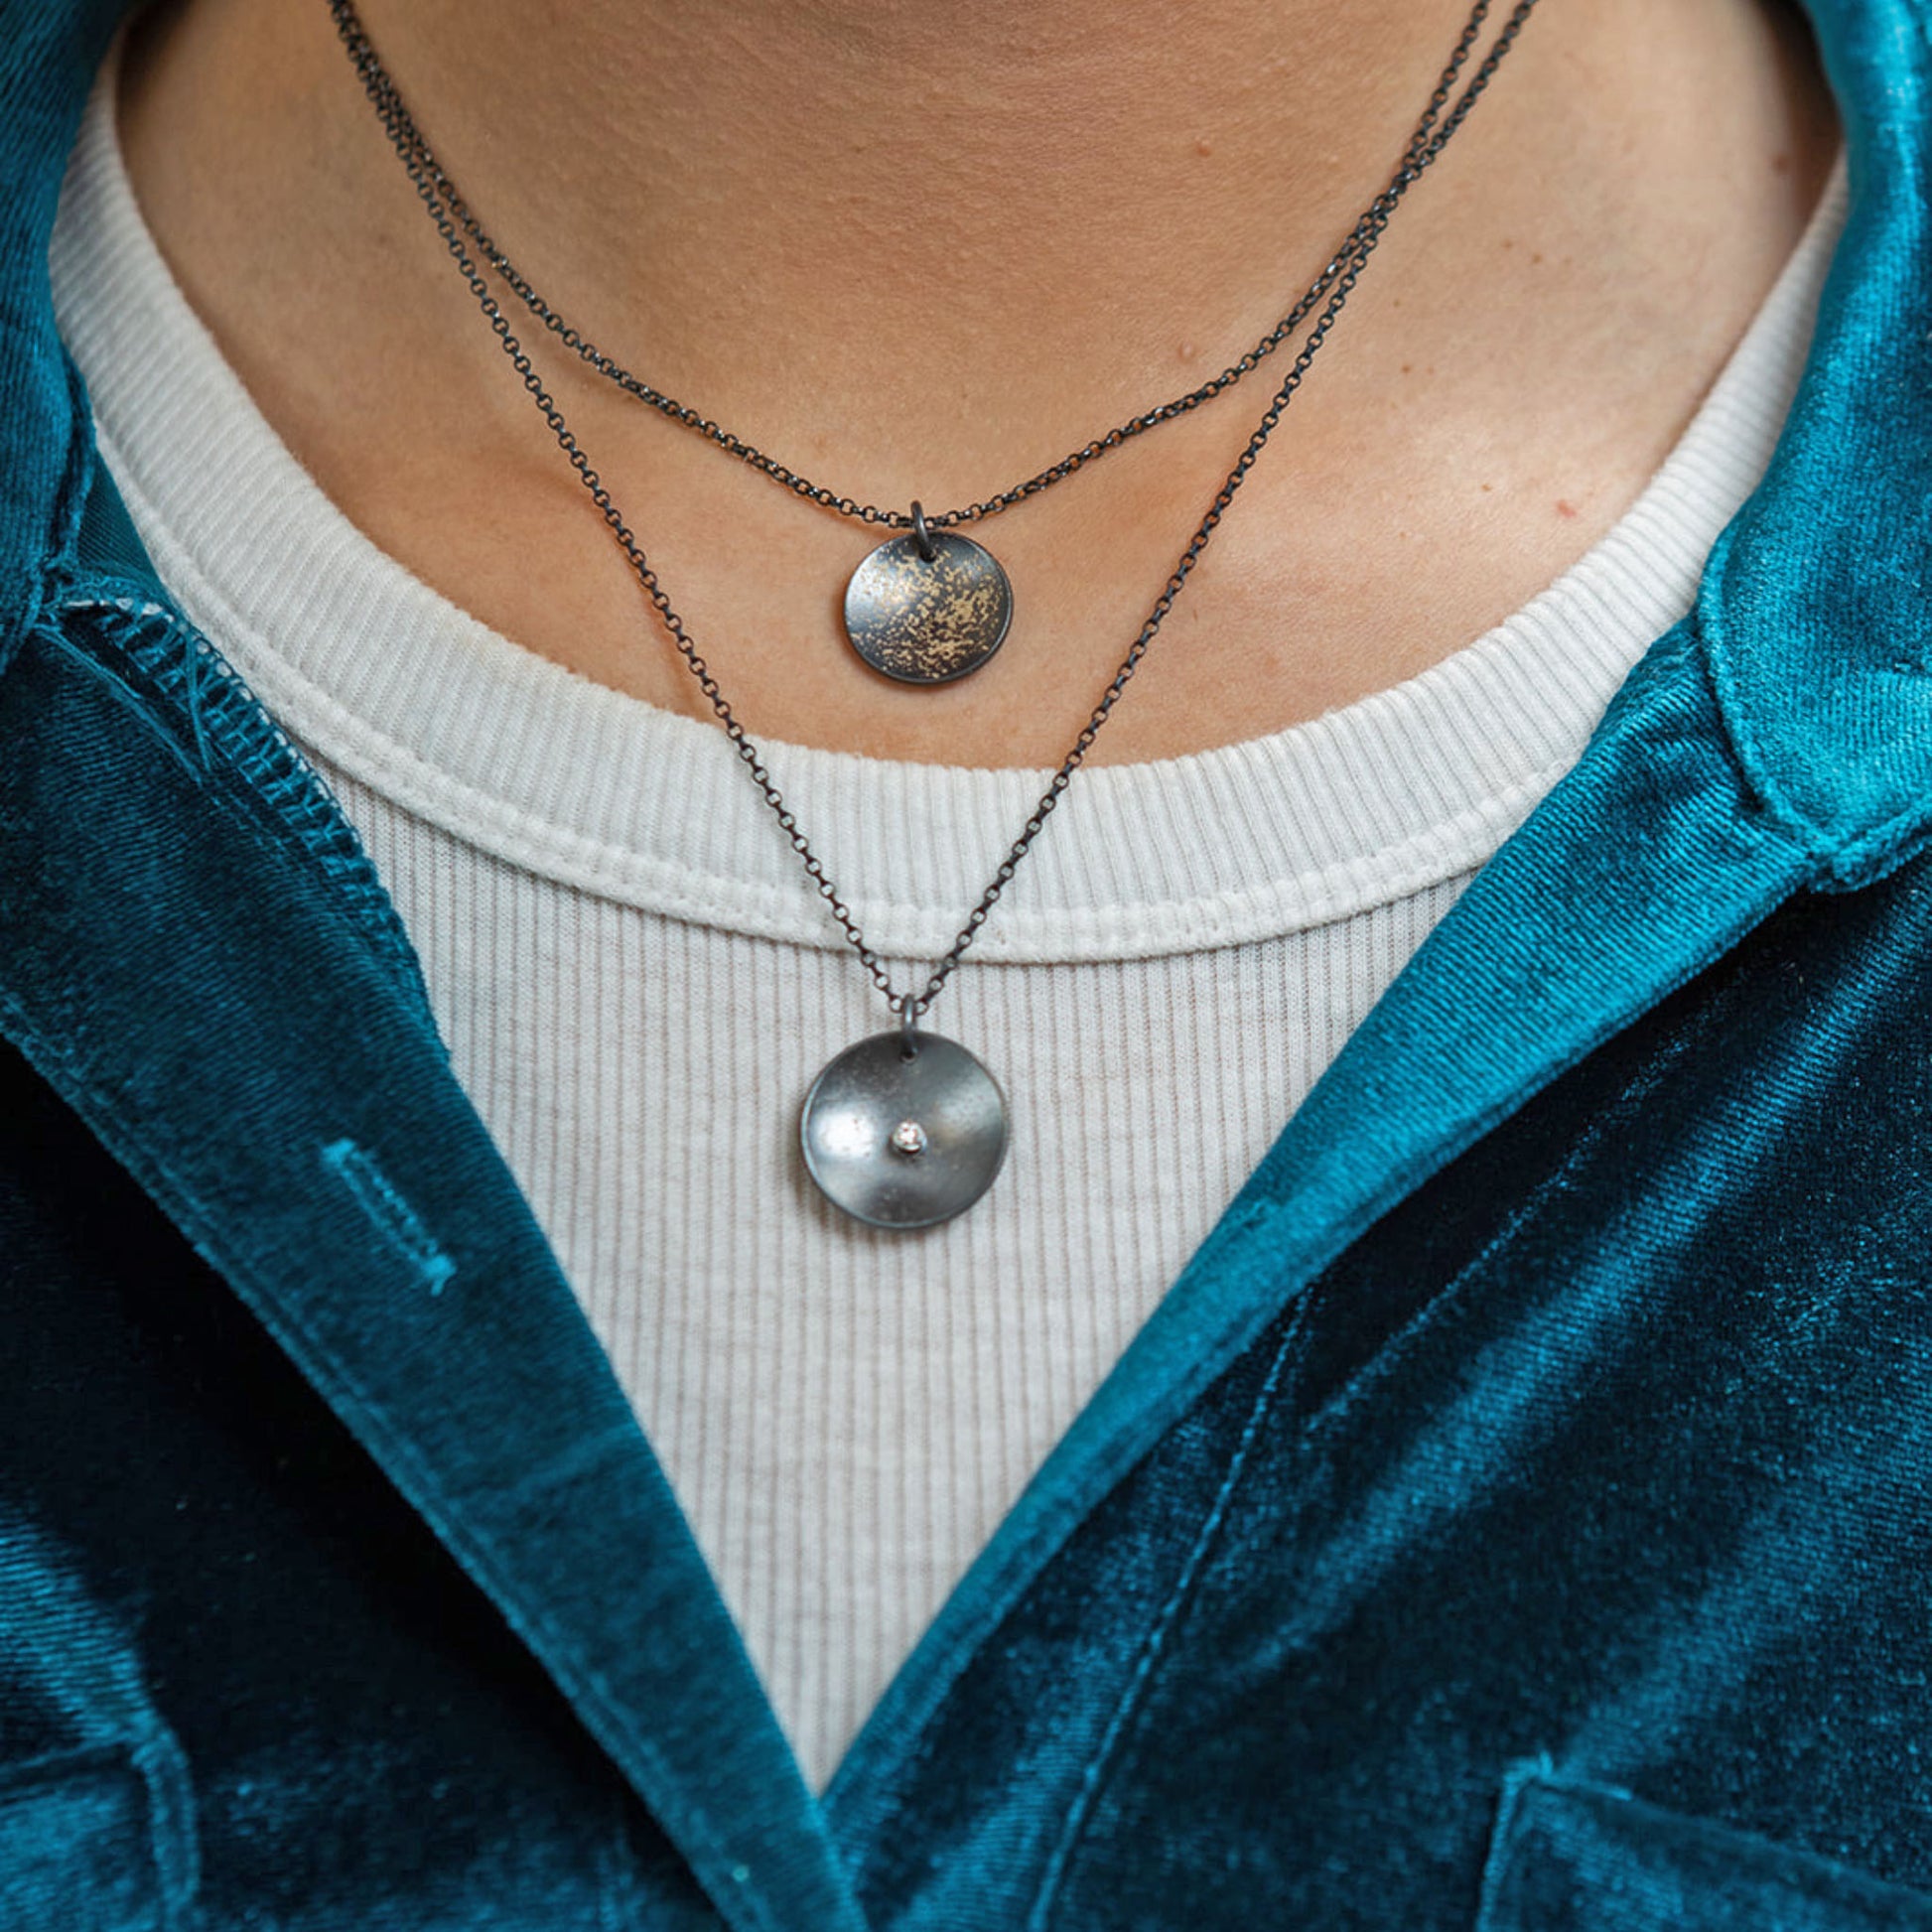 Galaxy diamond coin necklace closeup on model